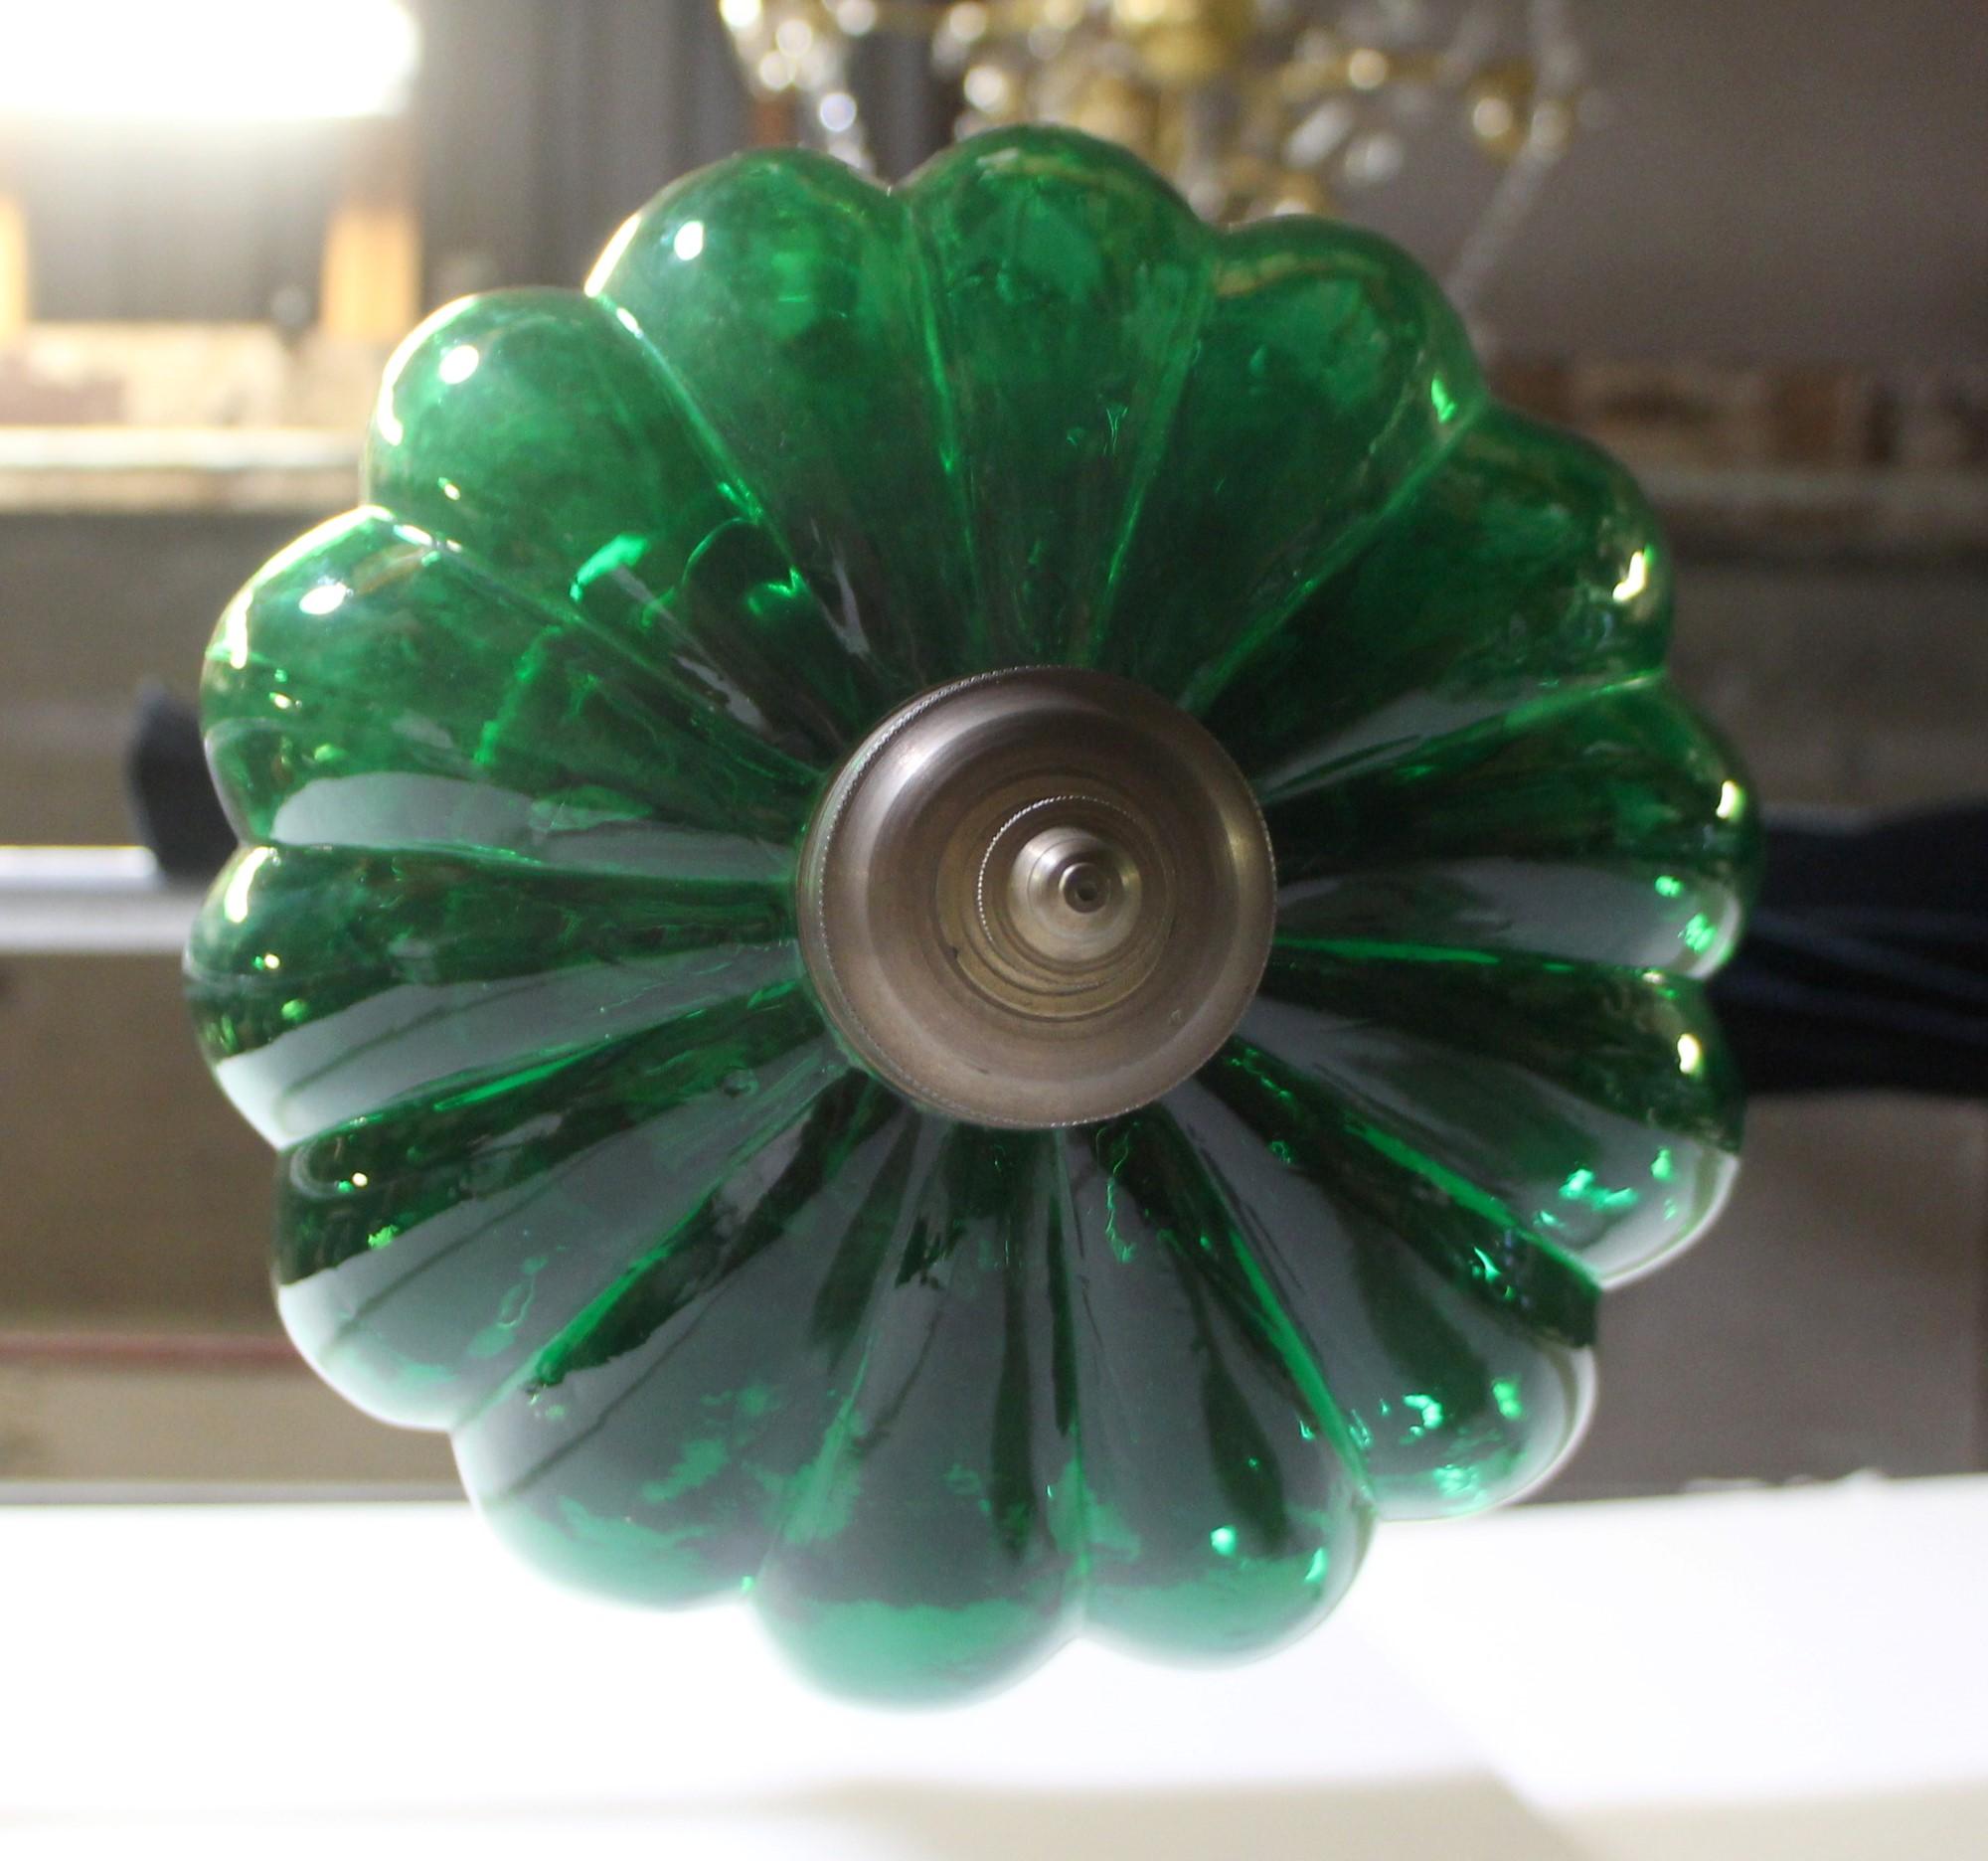 Antique Green Glass Pumpkin Bell Jar Pendant Light Brass Hardware with 3 Lights 4